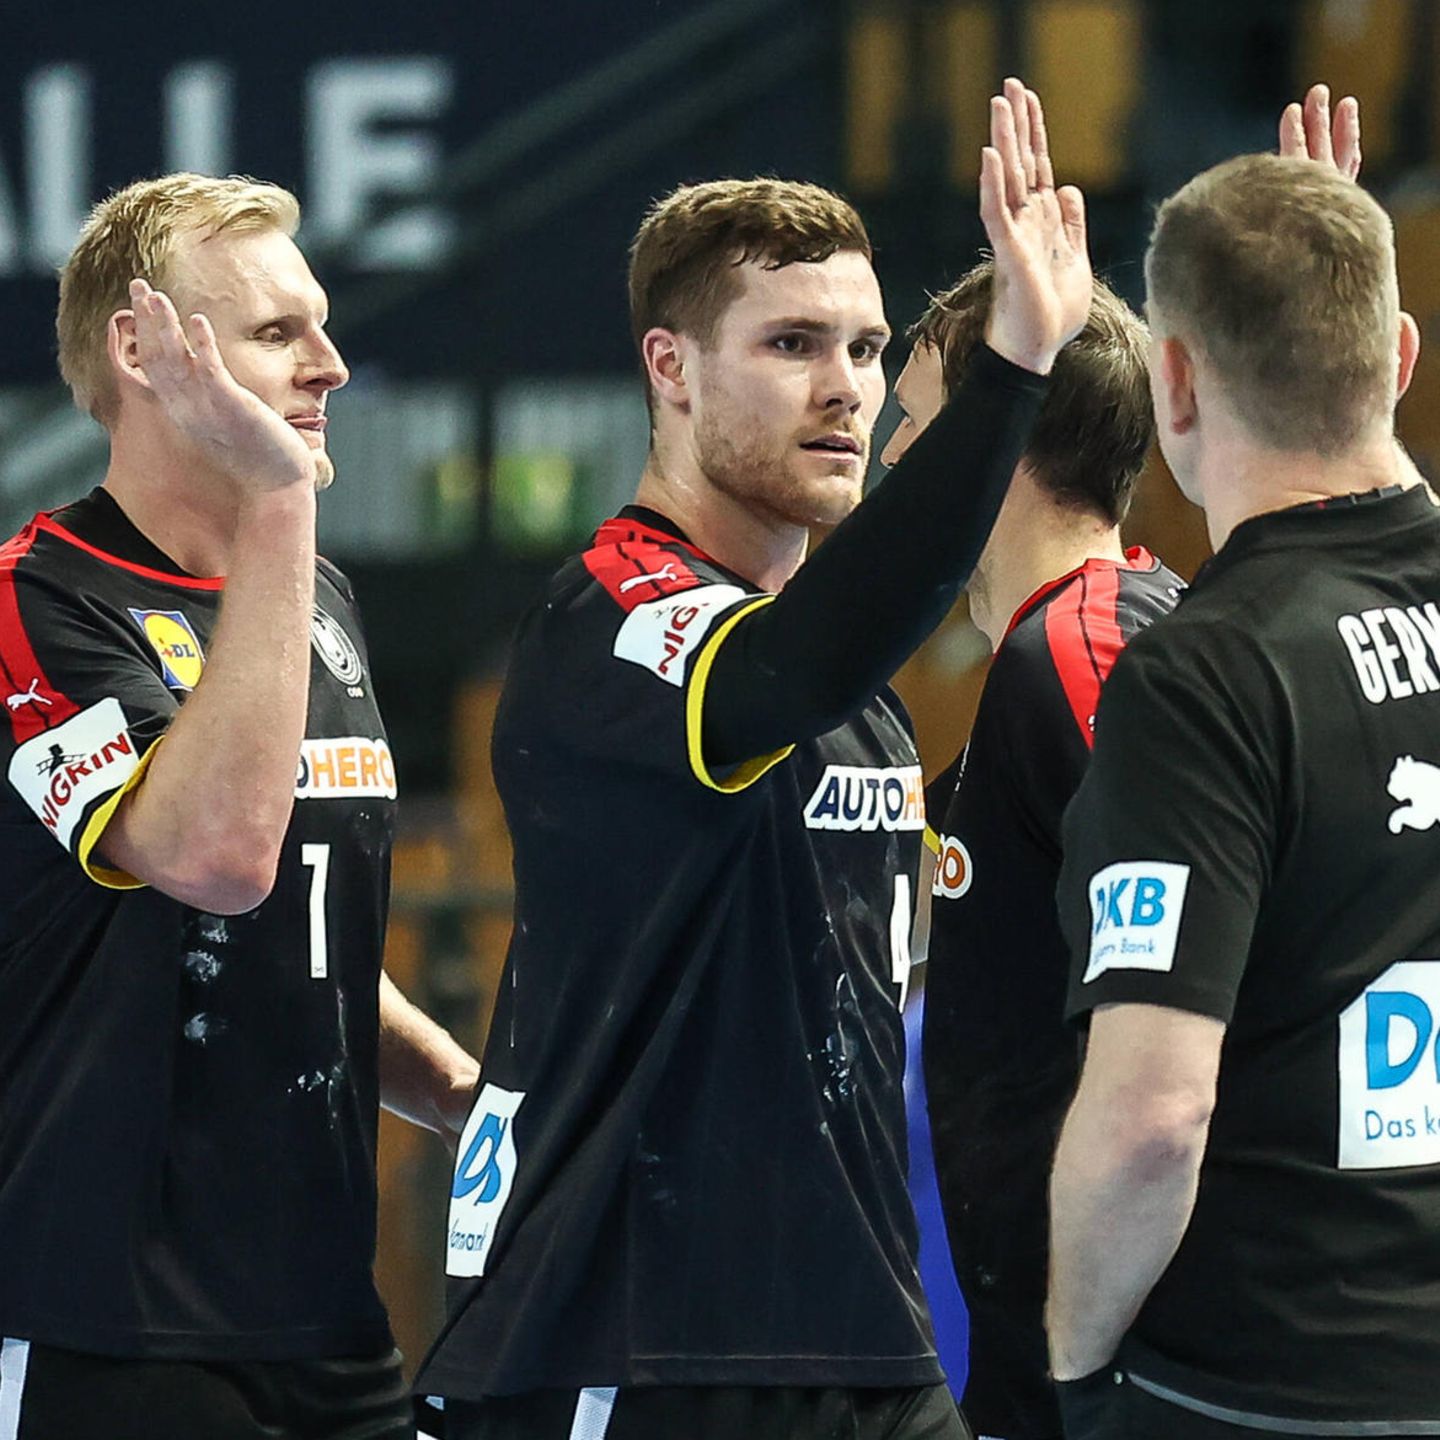 Handball-EM Für das deutsche Team ist es ein Trip ins Ungewisse STERN.de